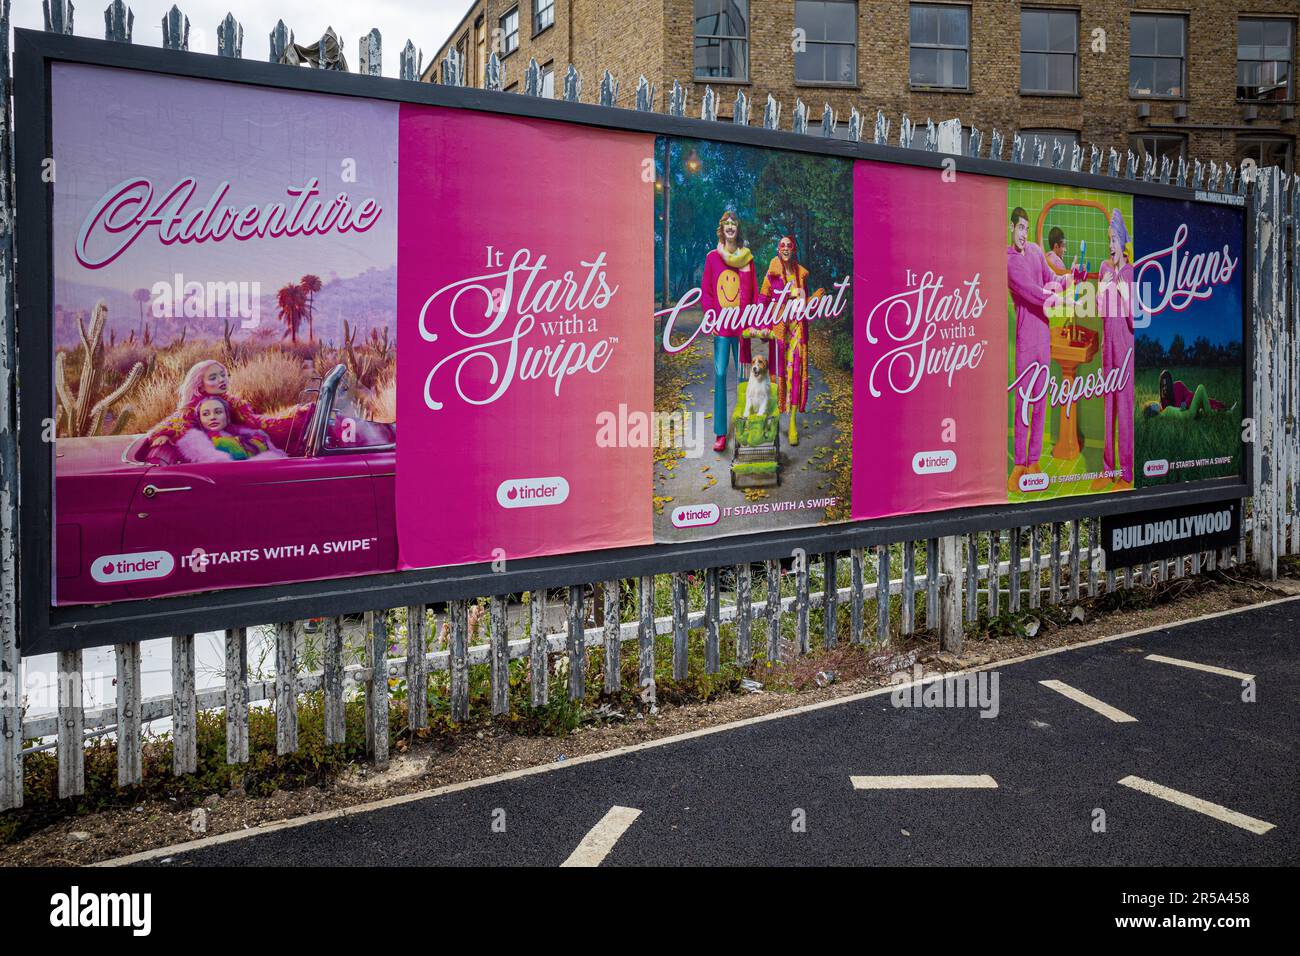 Tender Ads London - Publicité pour le service de rencontres Tinder à Shoreditch East London. Agence de publicité Mischief. Banque D'Images